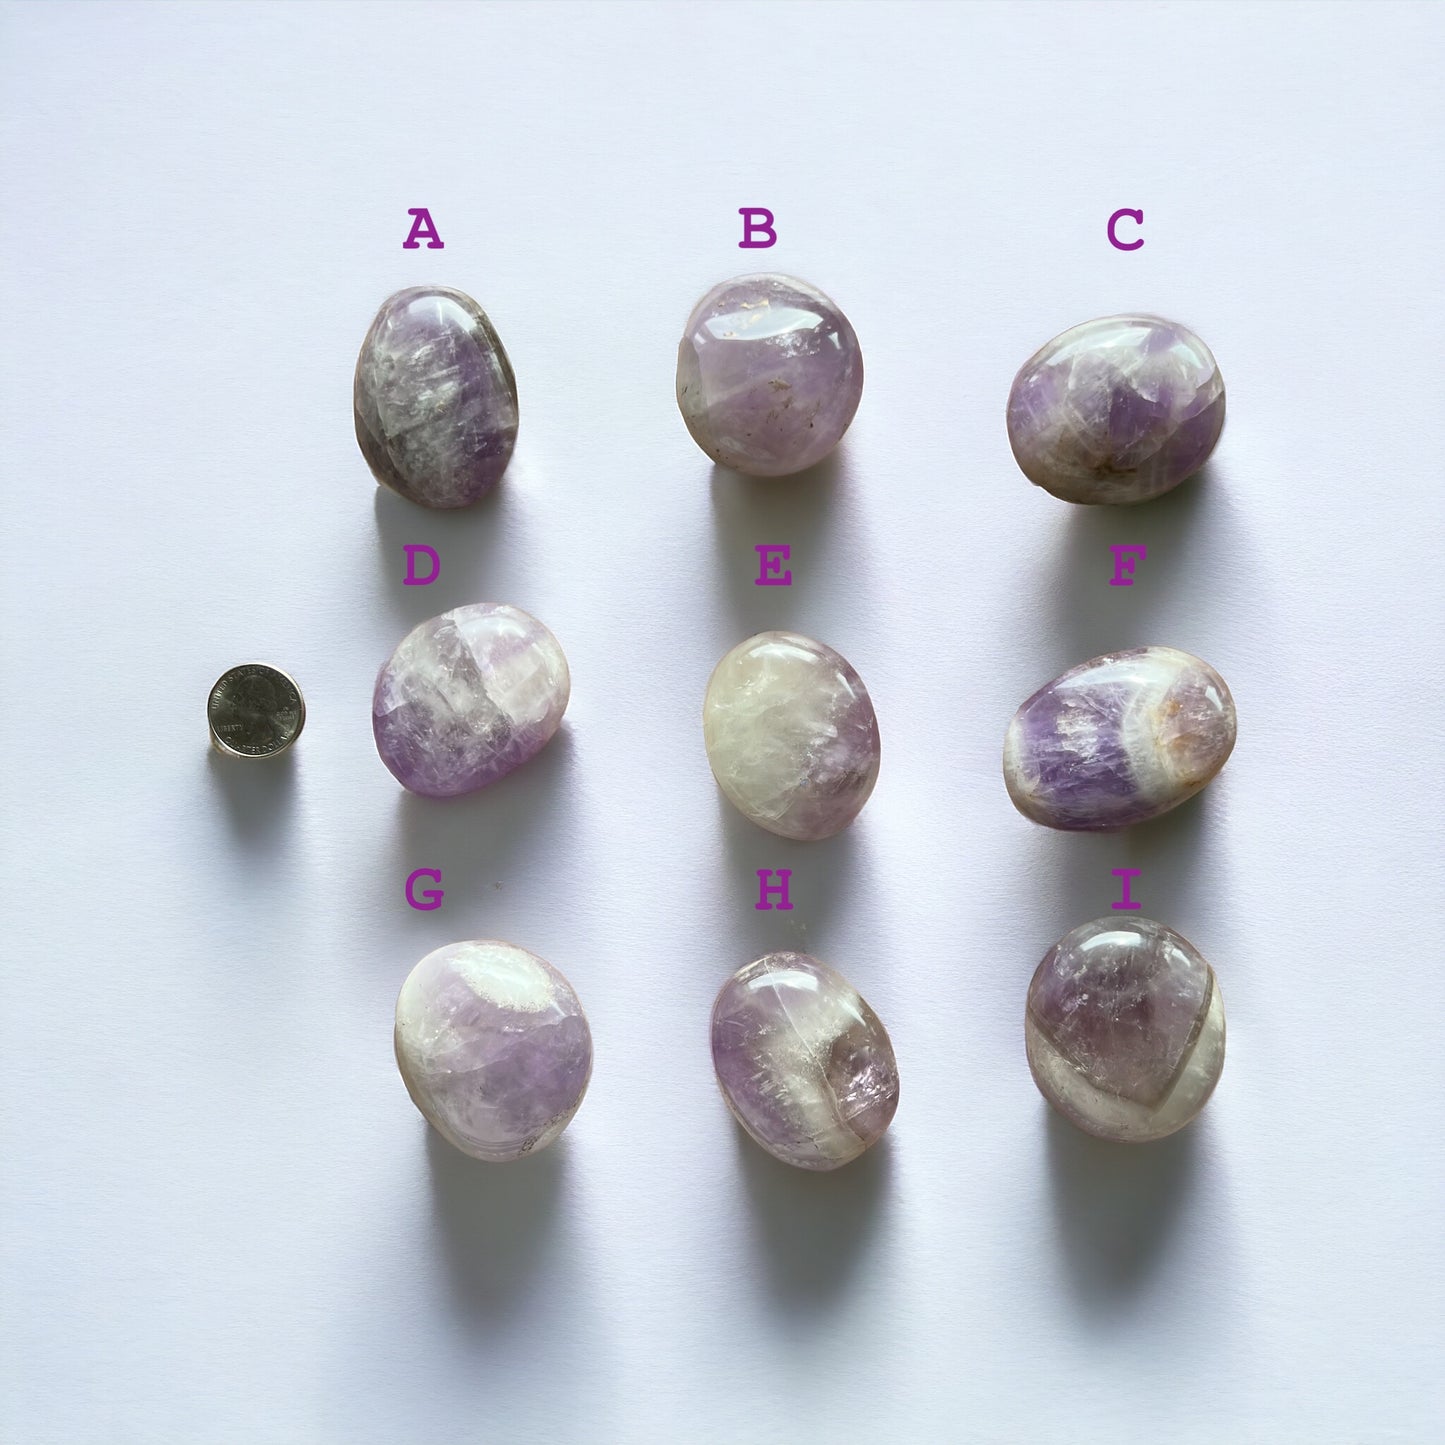 紫水晶棕櫚石 (M) 第 2 批